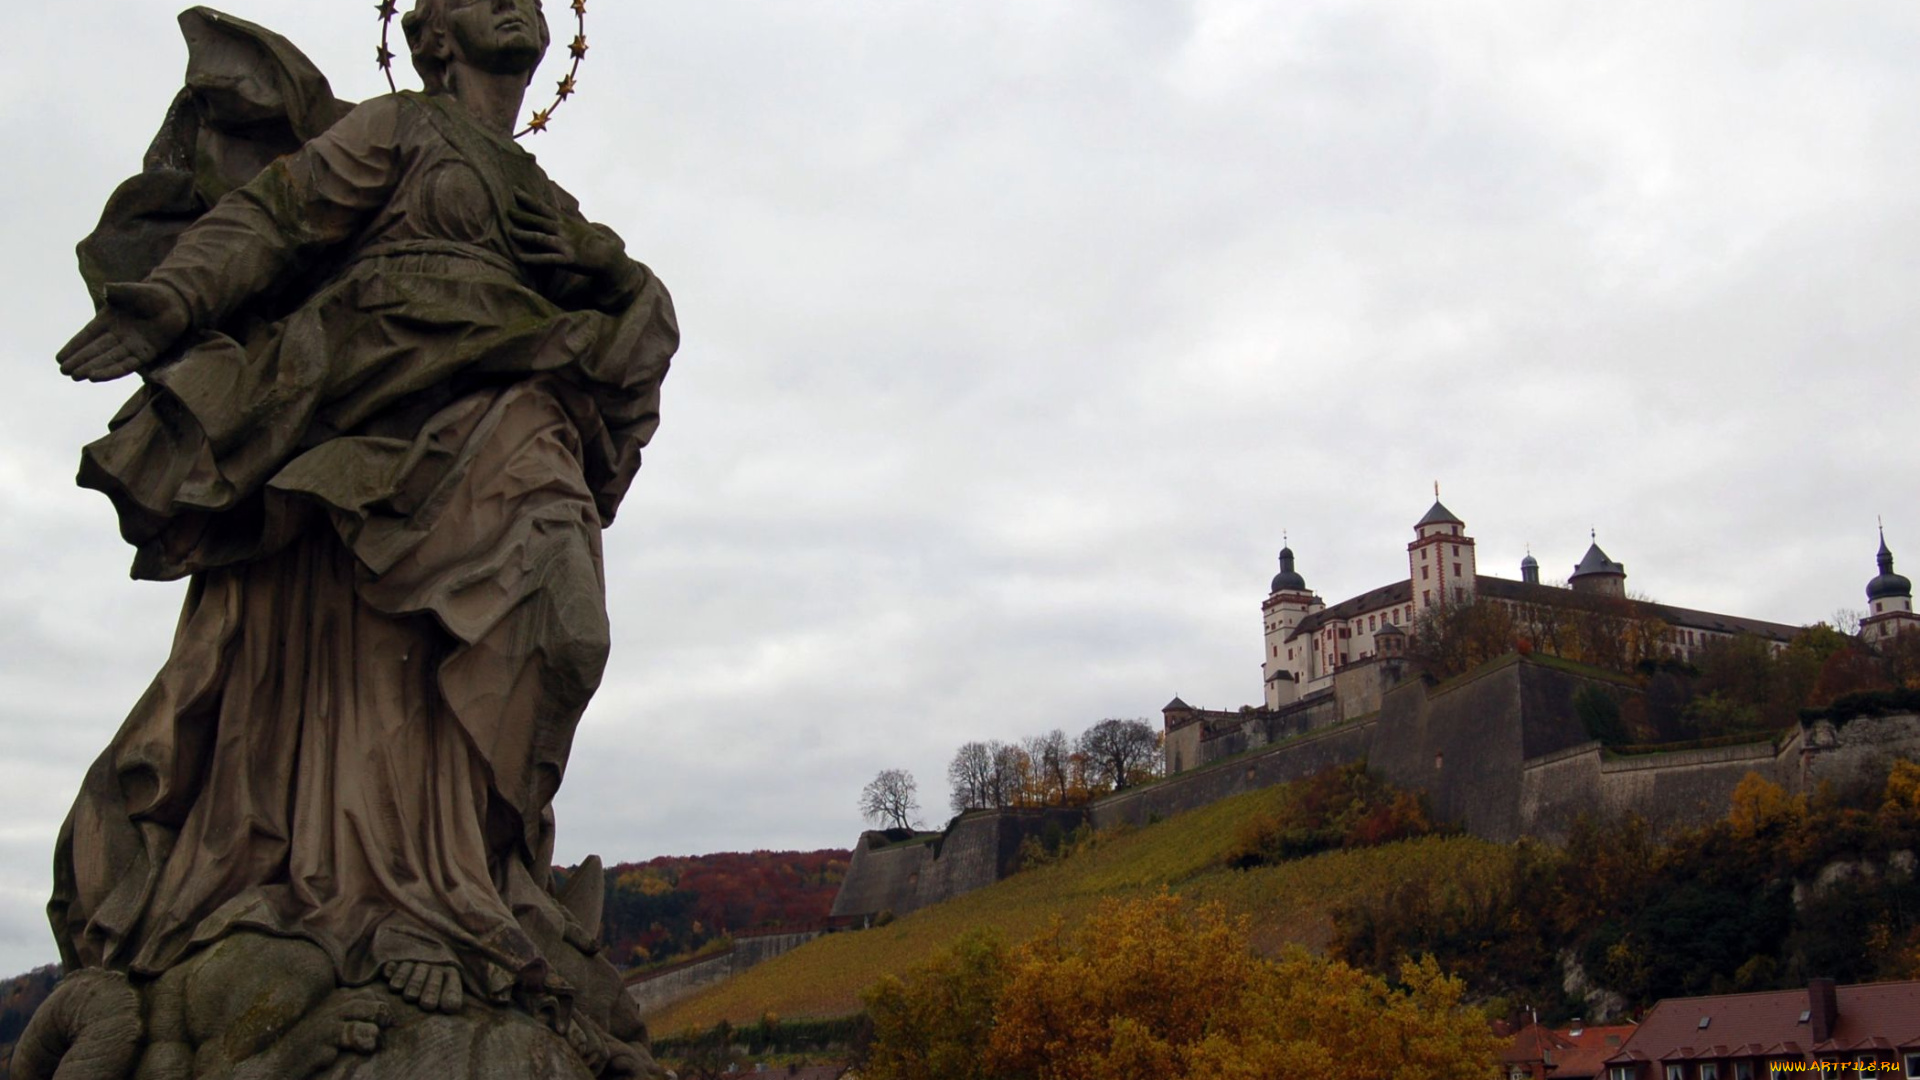 вюрцбург, германия, города, памятники, скульптуры, арт, объекты, замок, пейзаж, статуя, святая